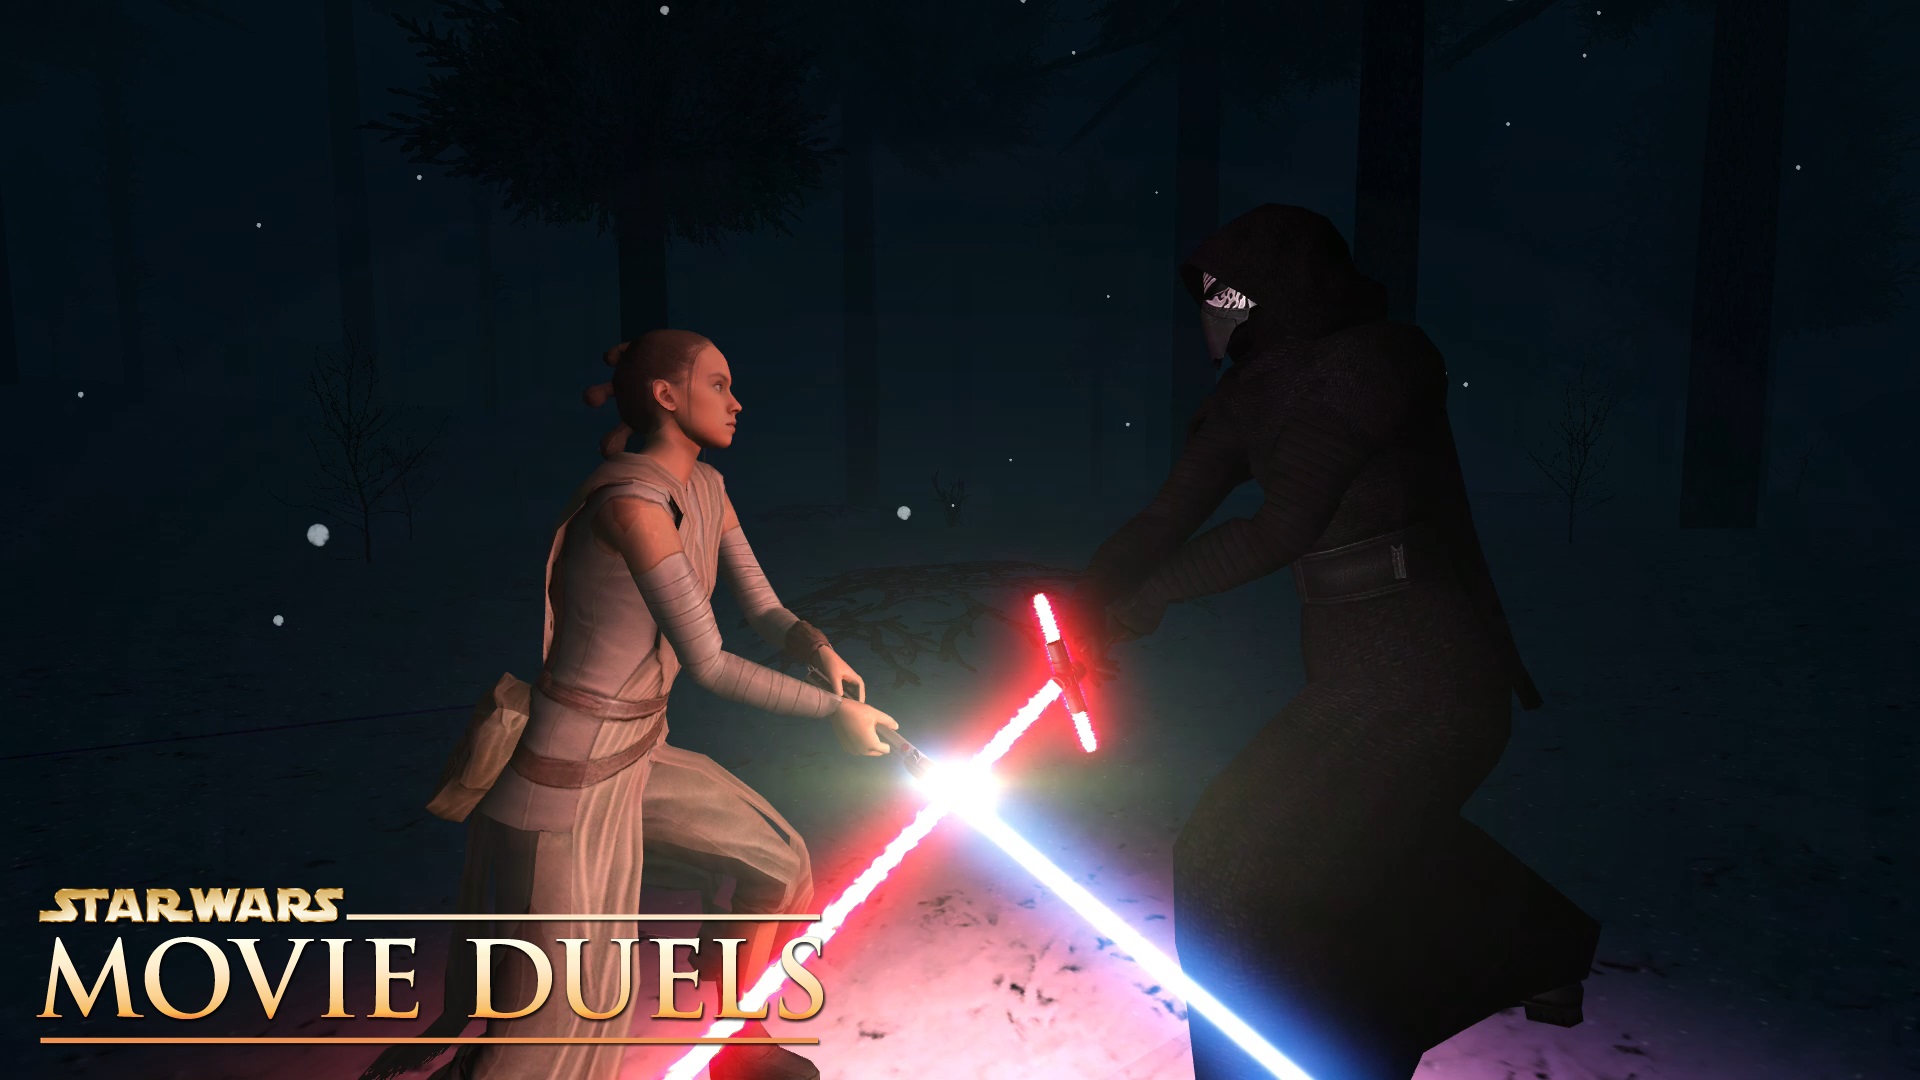 Rey locking sabers with Kylo Ren in a darkened forest